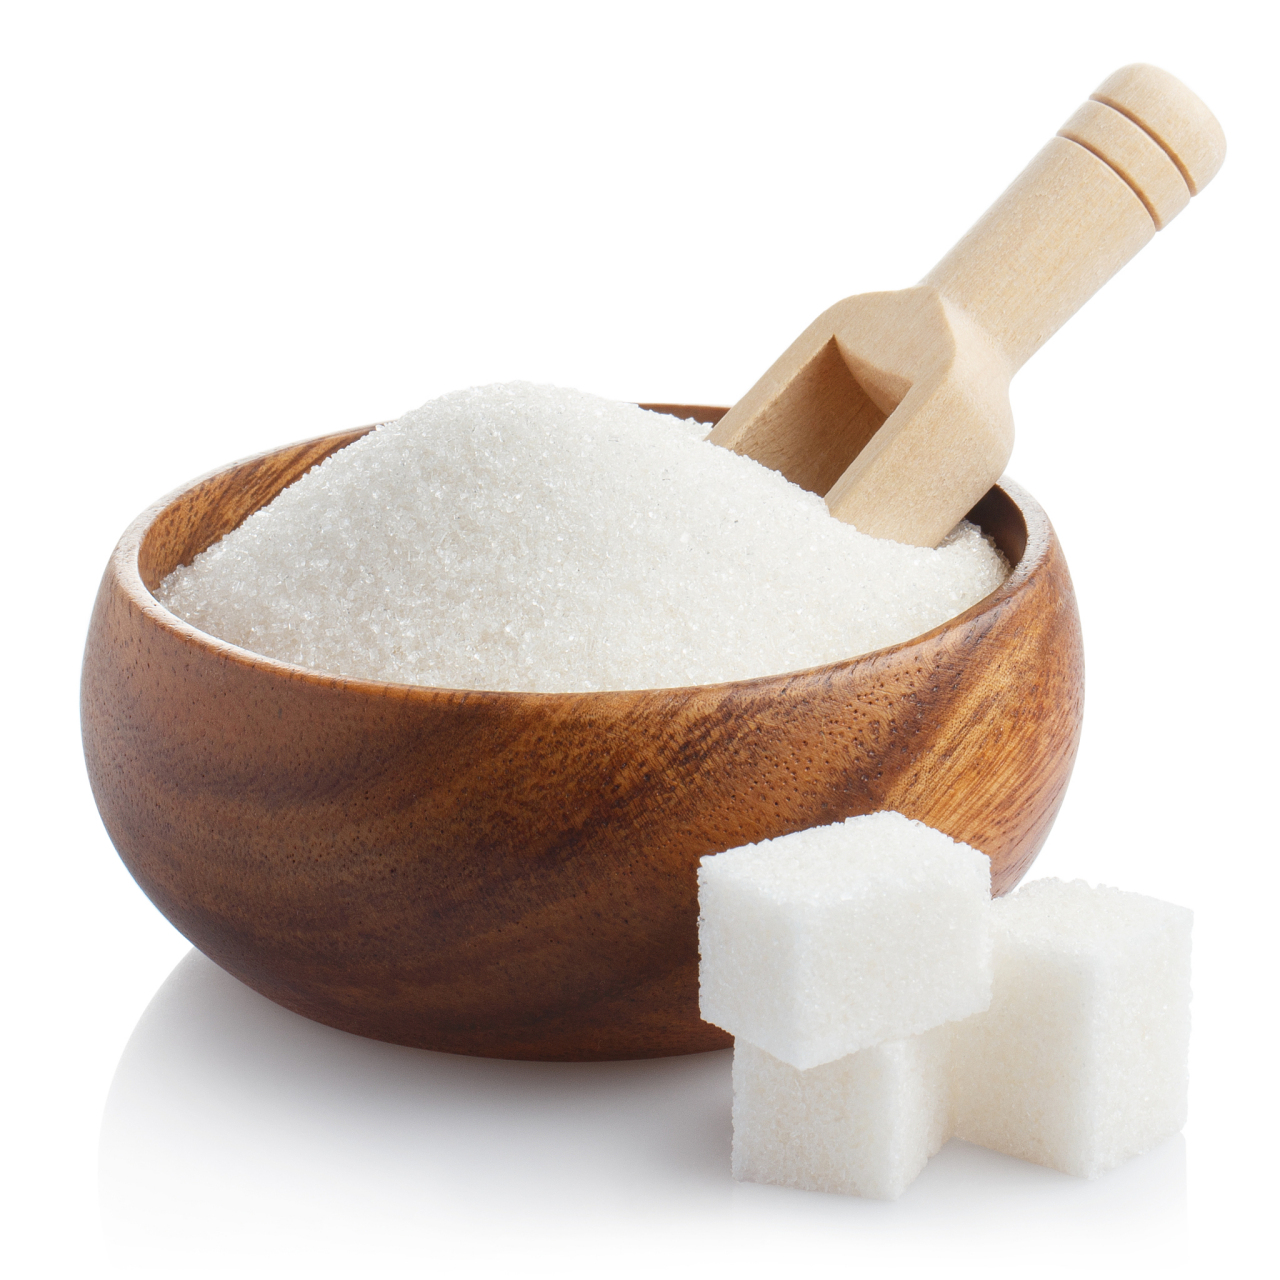 巴西白糖品质优良,价格稳定,备受中国企业关注